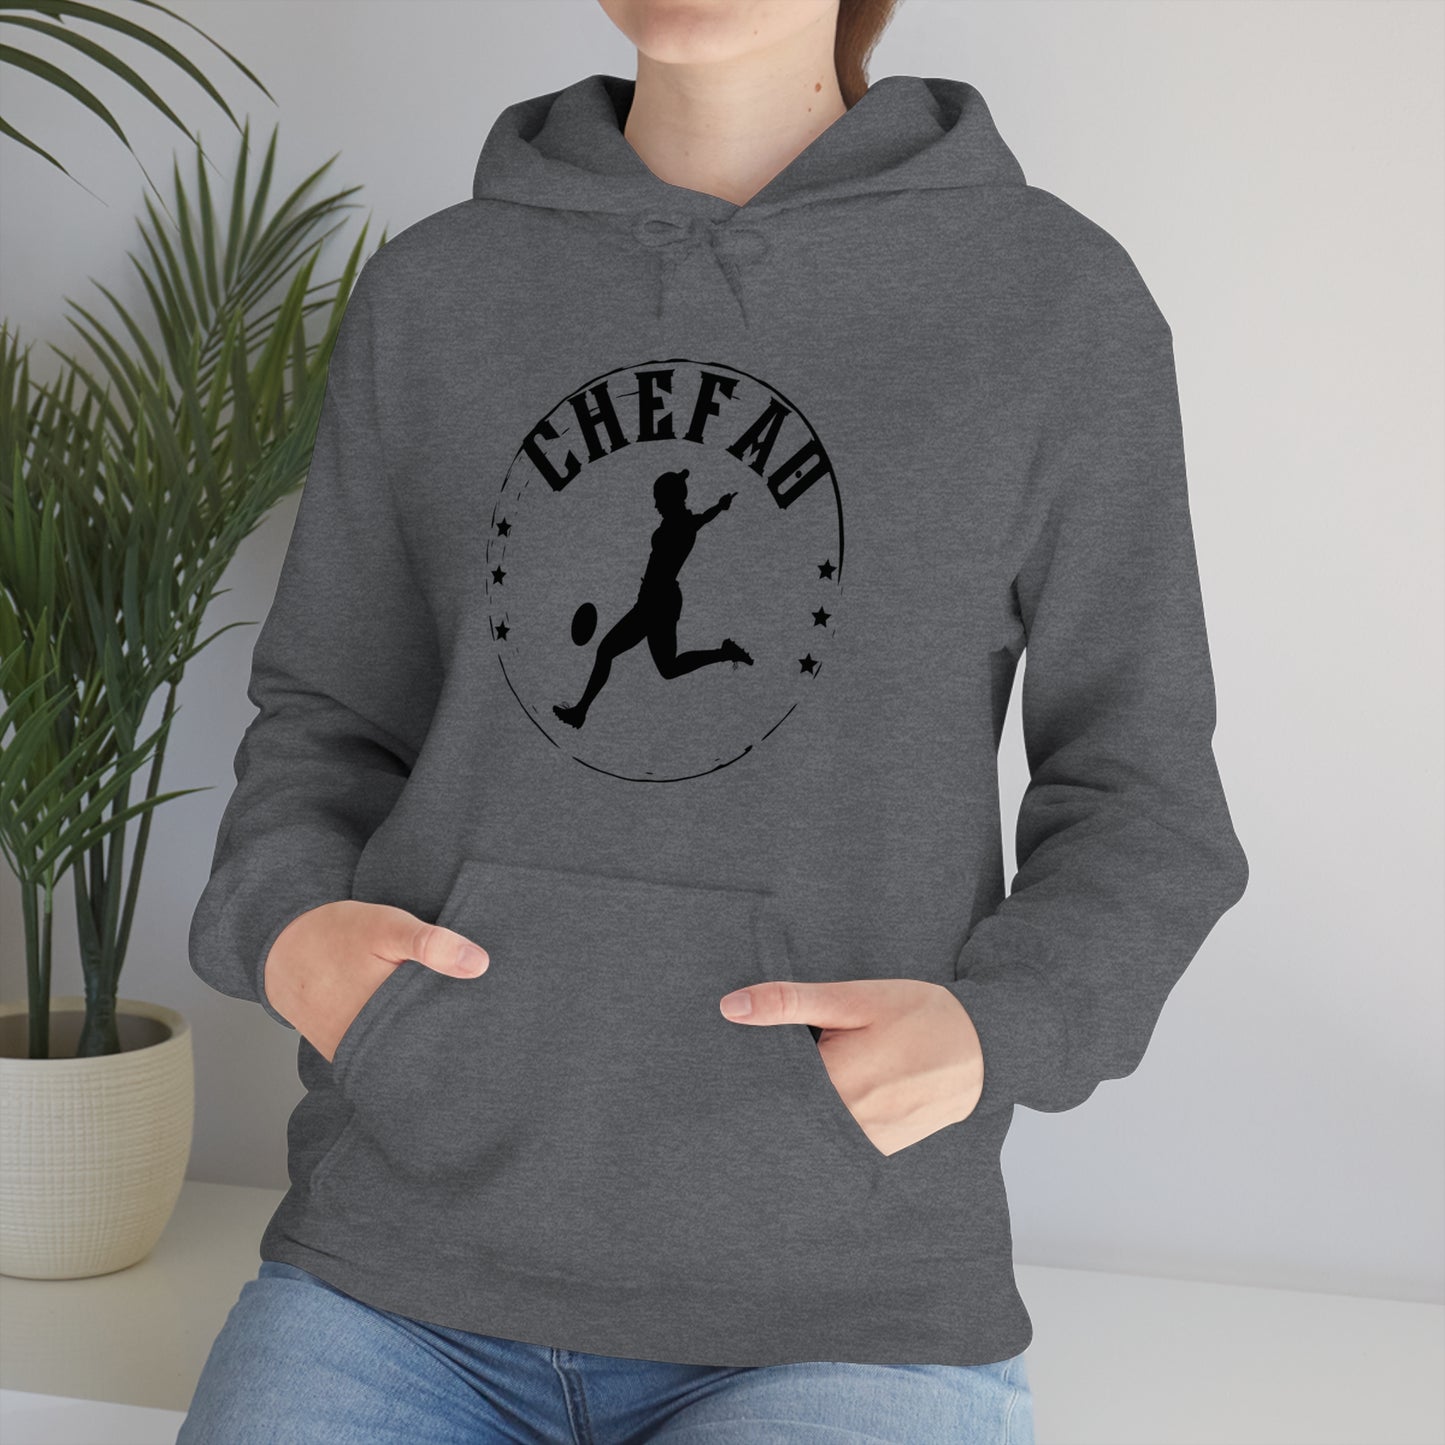 Chefao Rugby II, Unisex Heavy Blend Hooded Sweatshirt